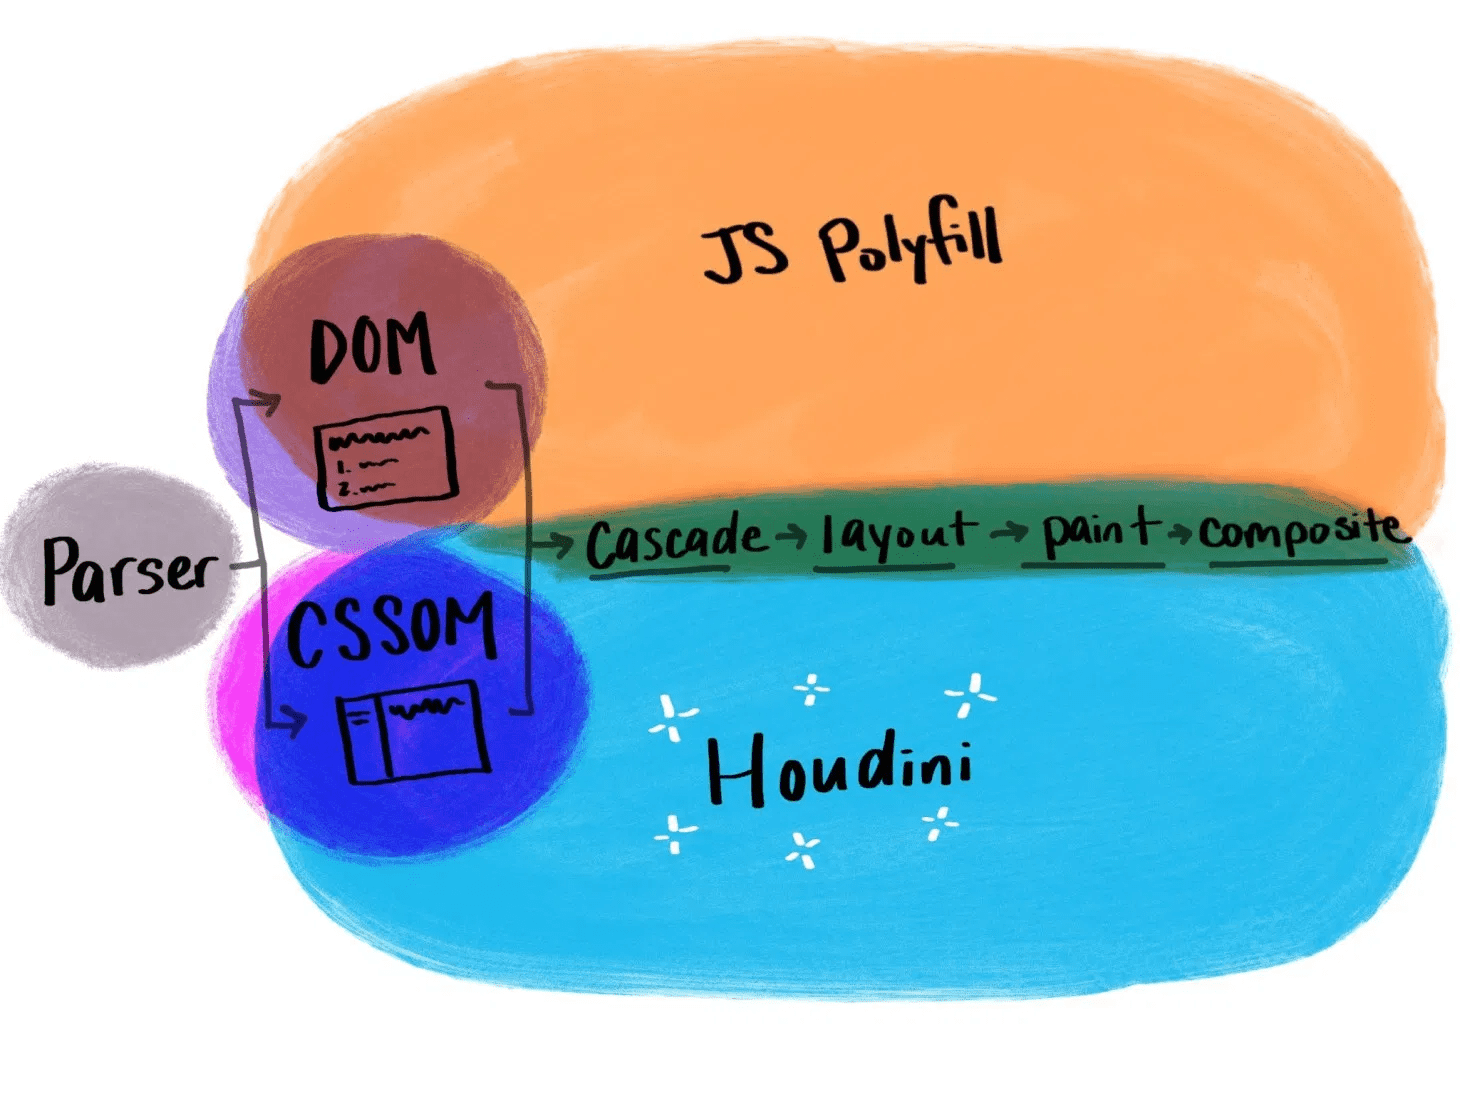 従来の JavaScript ポリフィルと比較した Houdini の仕組みを示すイラスト。